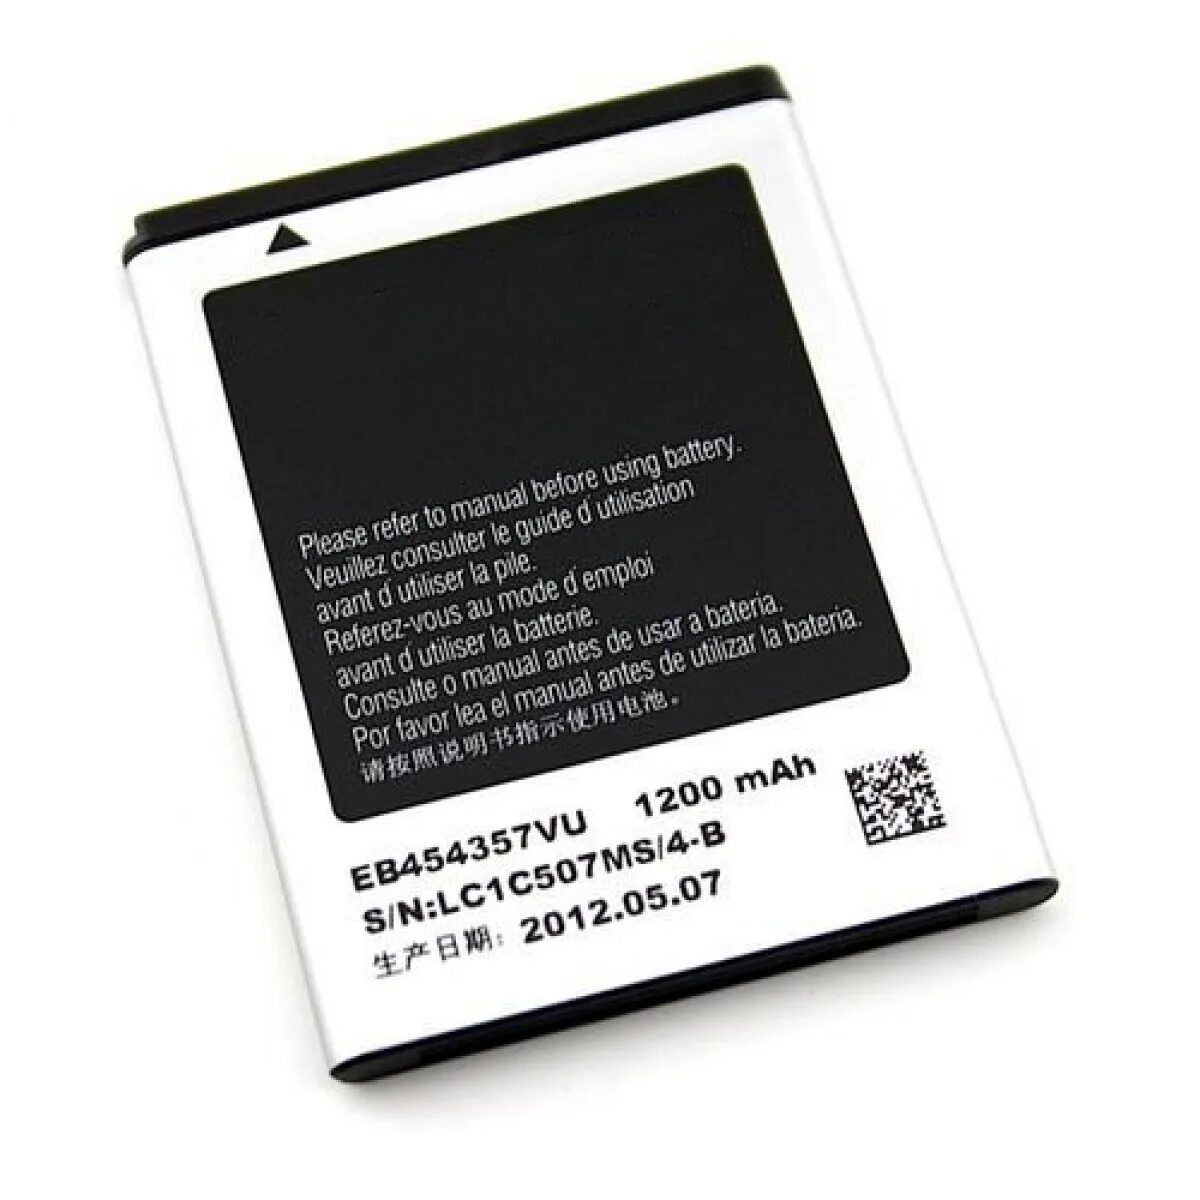 Аккумулятор samsung s. Аккумуляторная батарея для Samsung s5360 Galaxy y (eb454357vu). 454357 Аккумулятор самсунг. Аккумуляторная батарея для Samsung s5363 Galaxy y. Аккумулятор для Samsung Galaxy Pocket s5300 eb454357vu.